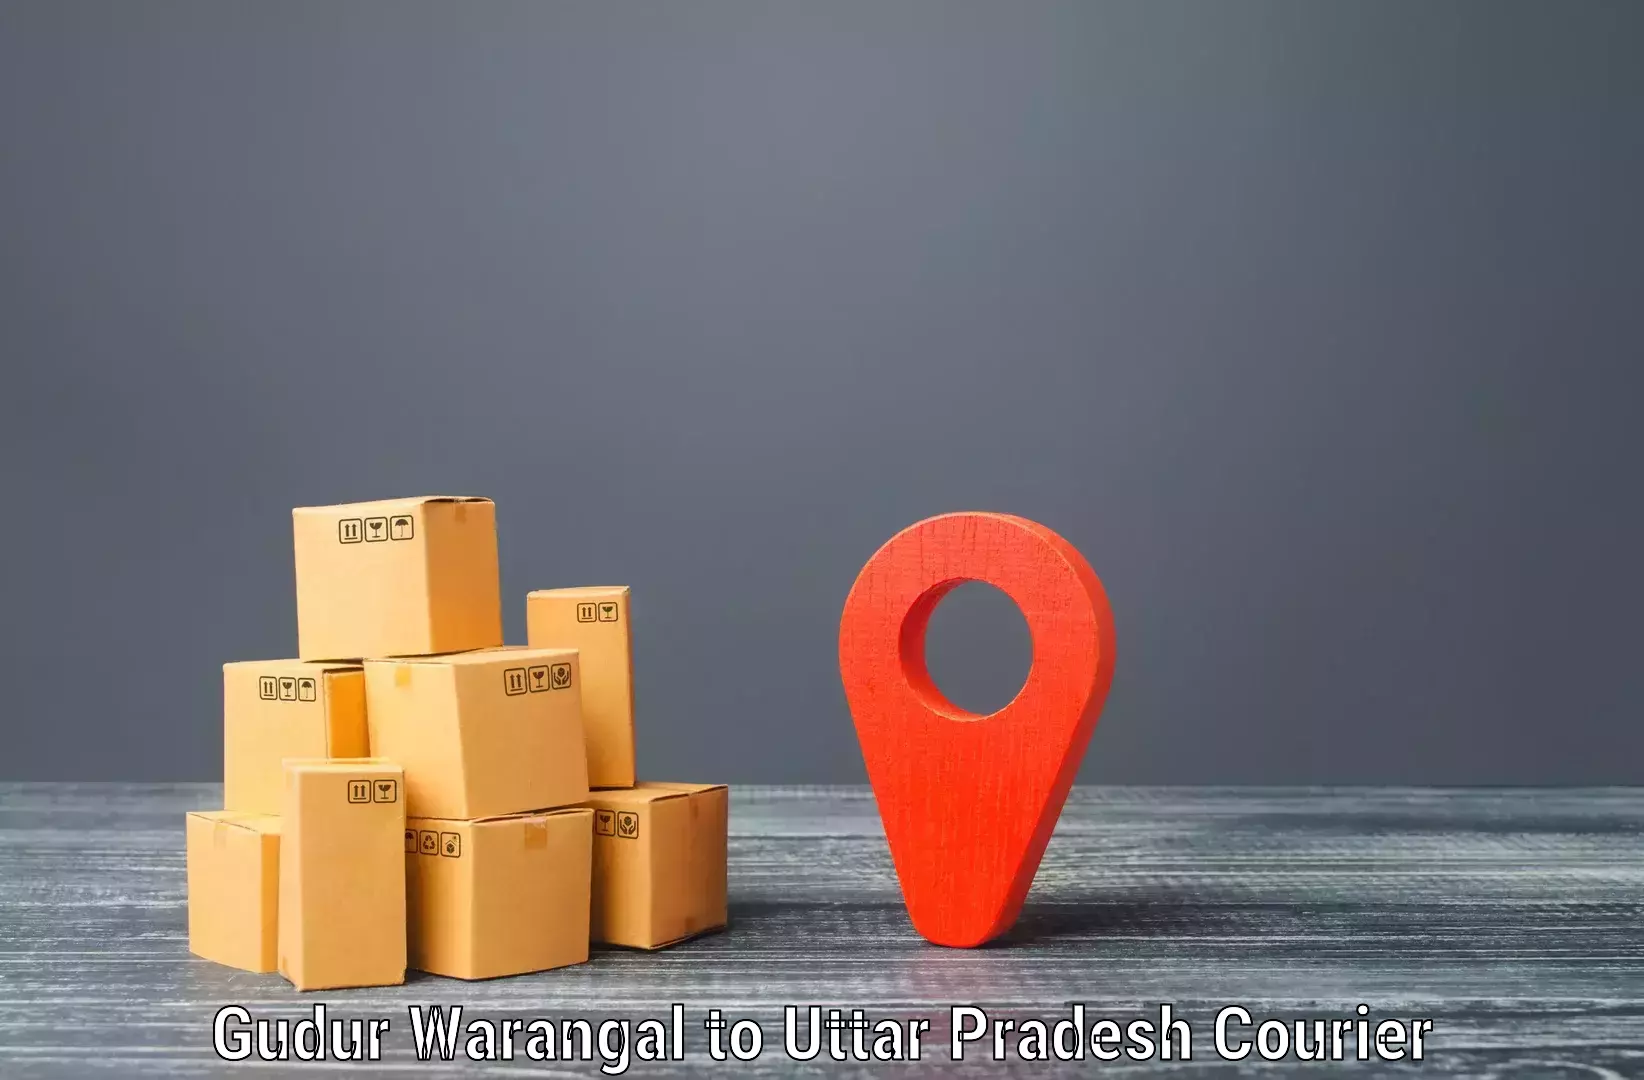 Large package courier Gudur Warangal to Gautam Buddha Nagar